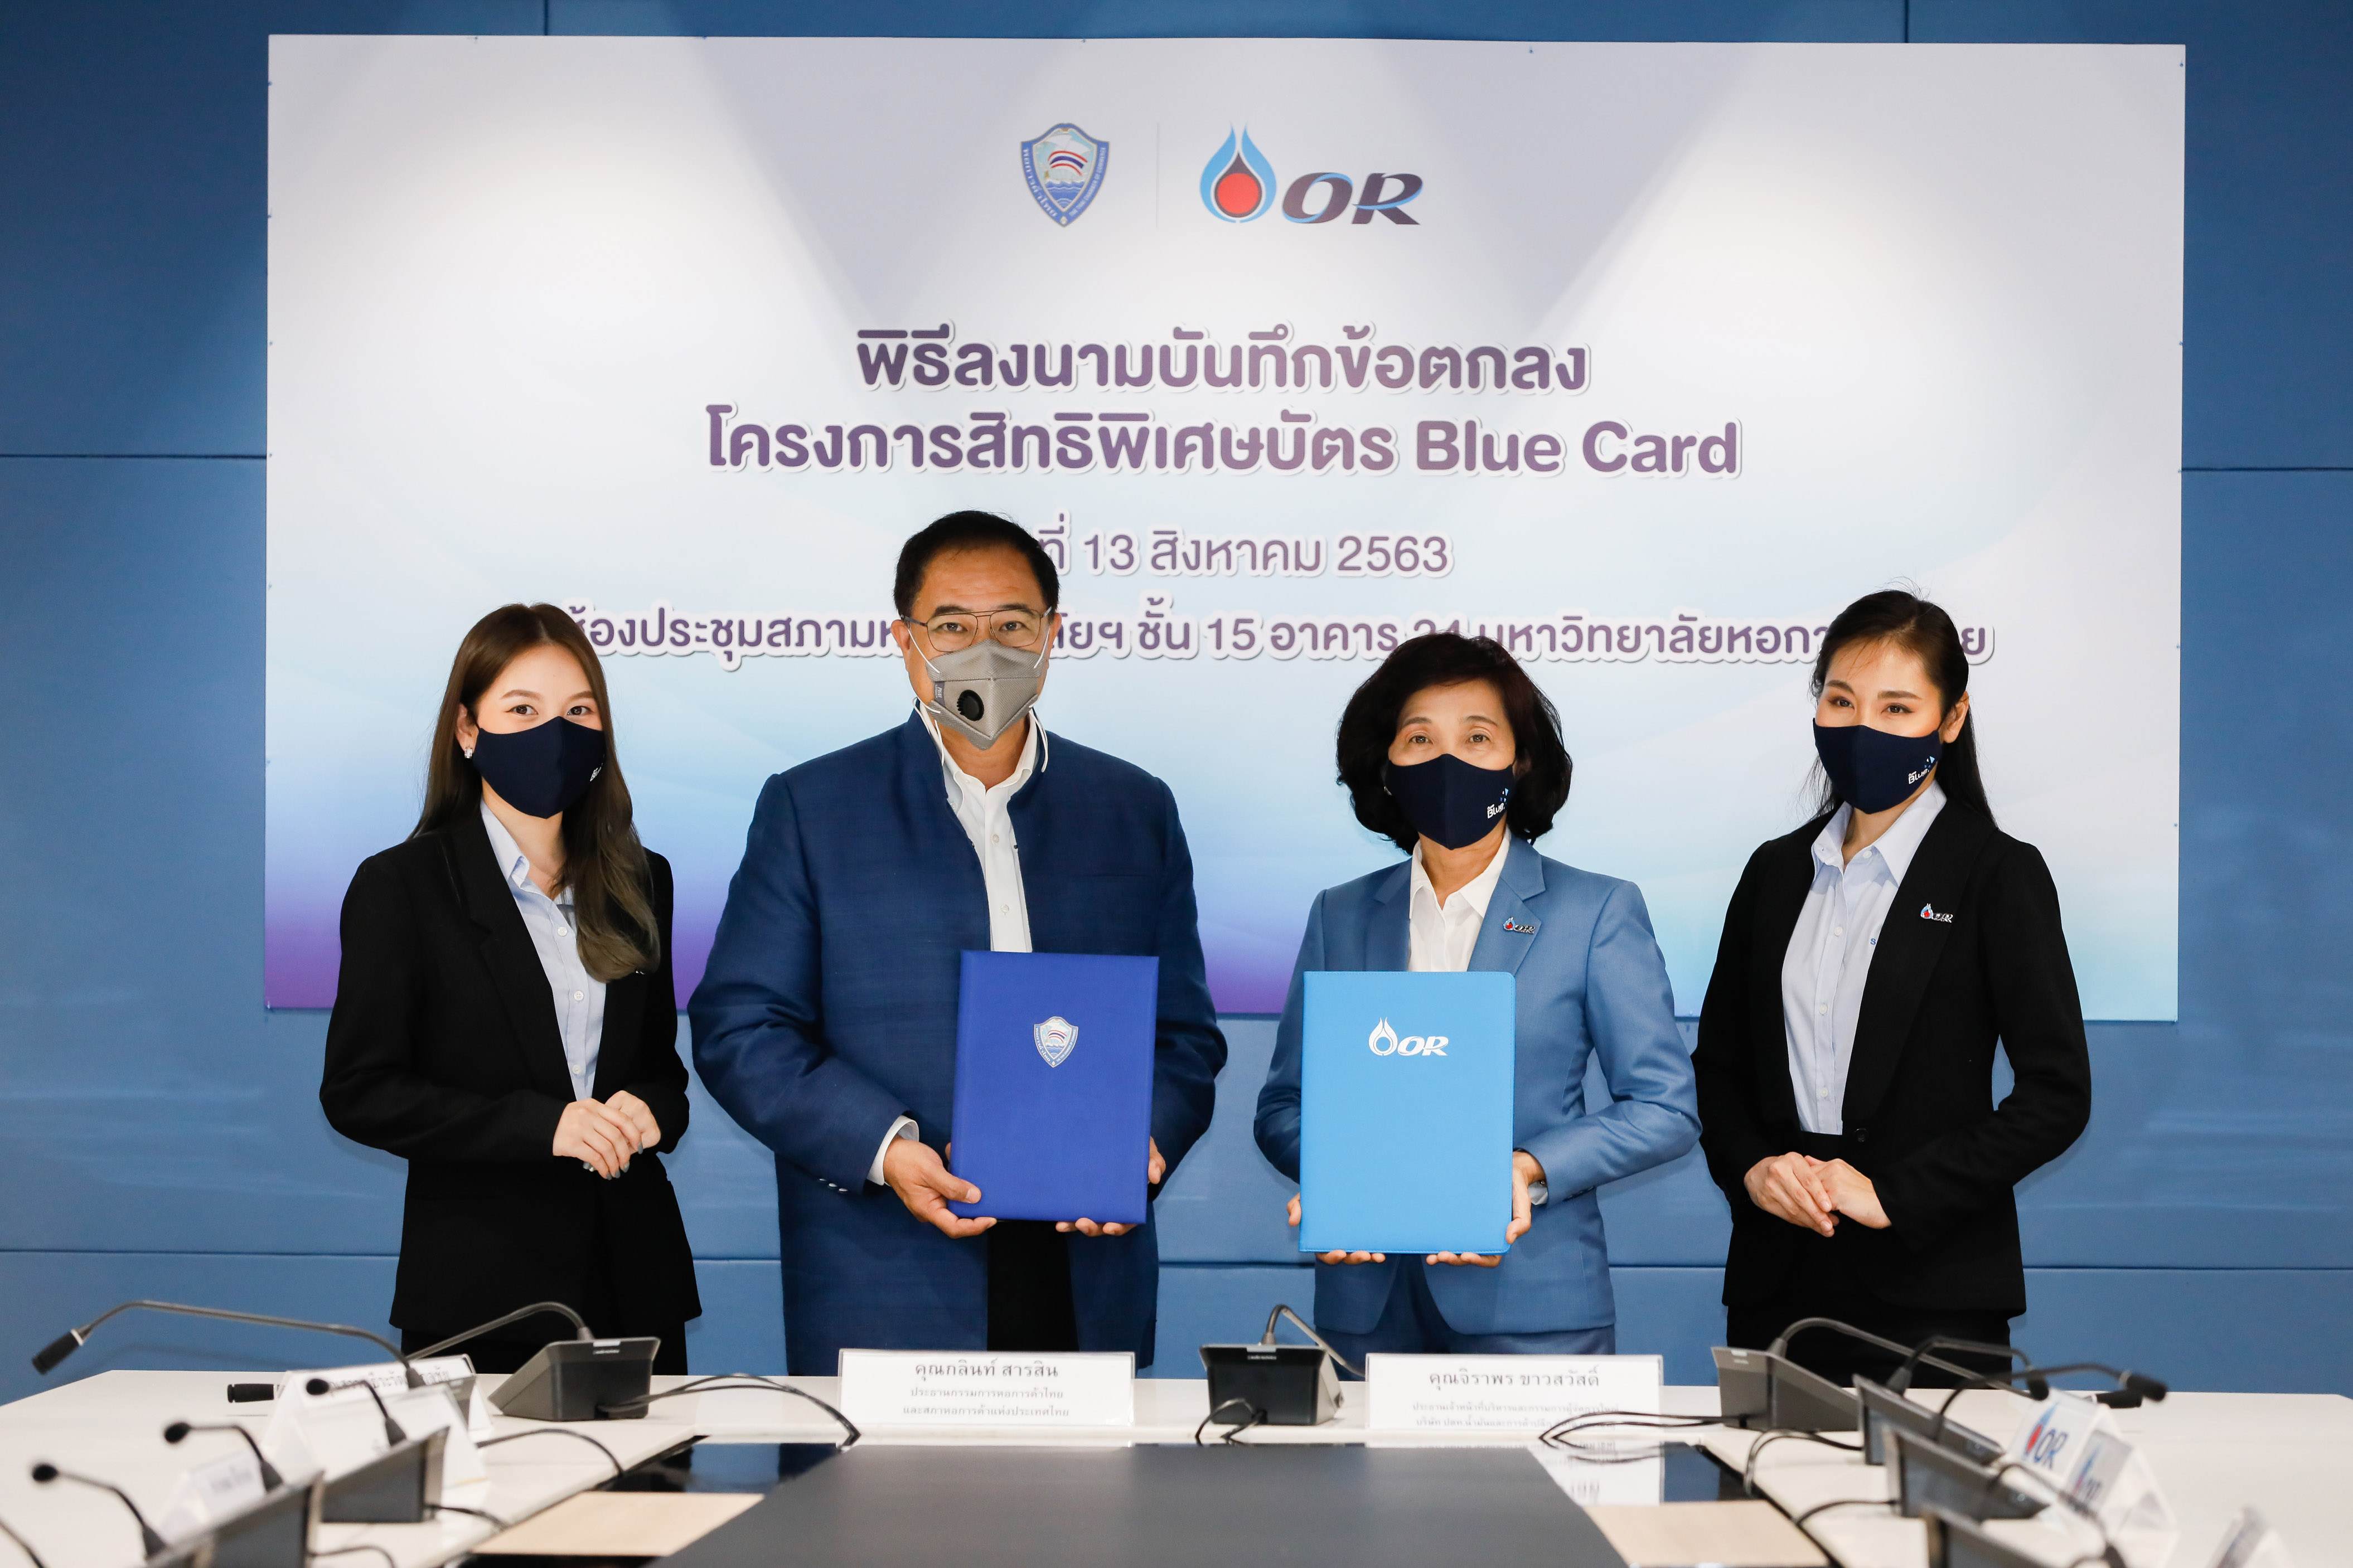 หอการค้าฯ จับมือ โออาร์ ผุดโครงการสิทธิพิเศษบัตร Blue Card สำหรับสมาชิก หวังกระตุ้นการใช้จ่ายภายในประเทศ ดันเศรษฐกิจไทยหมุนเวียน